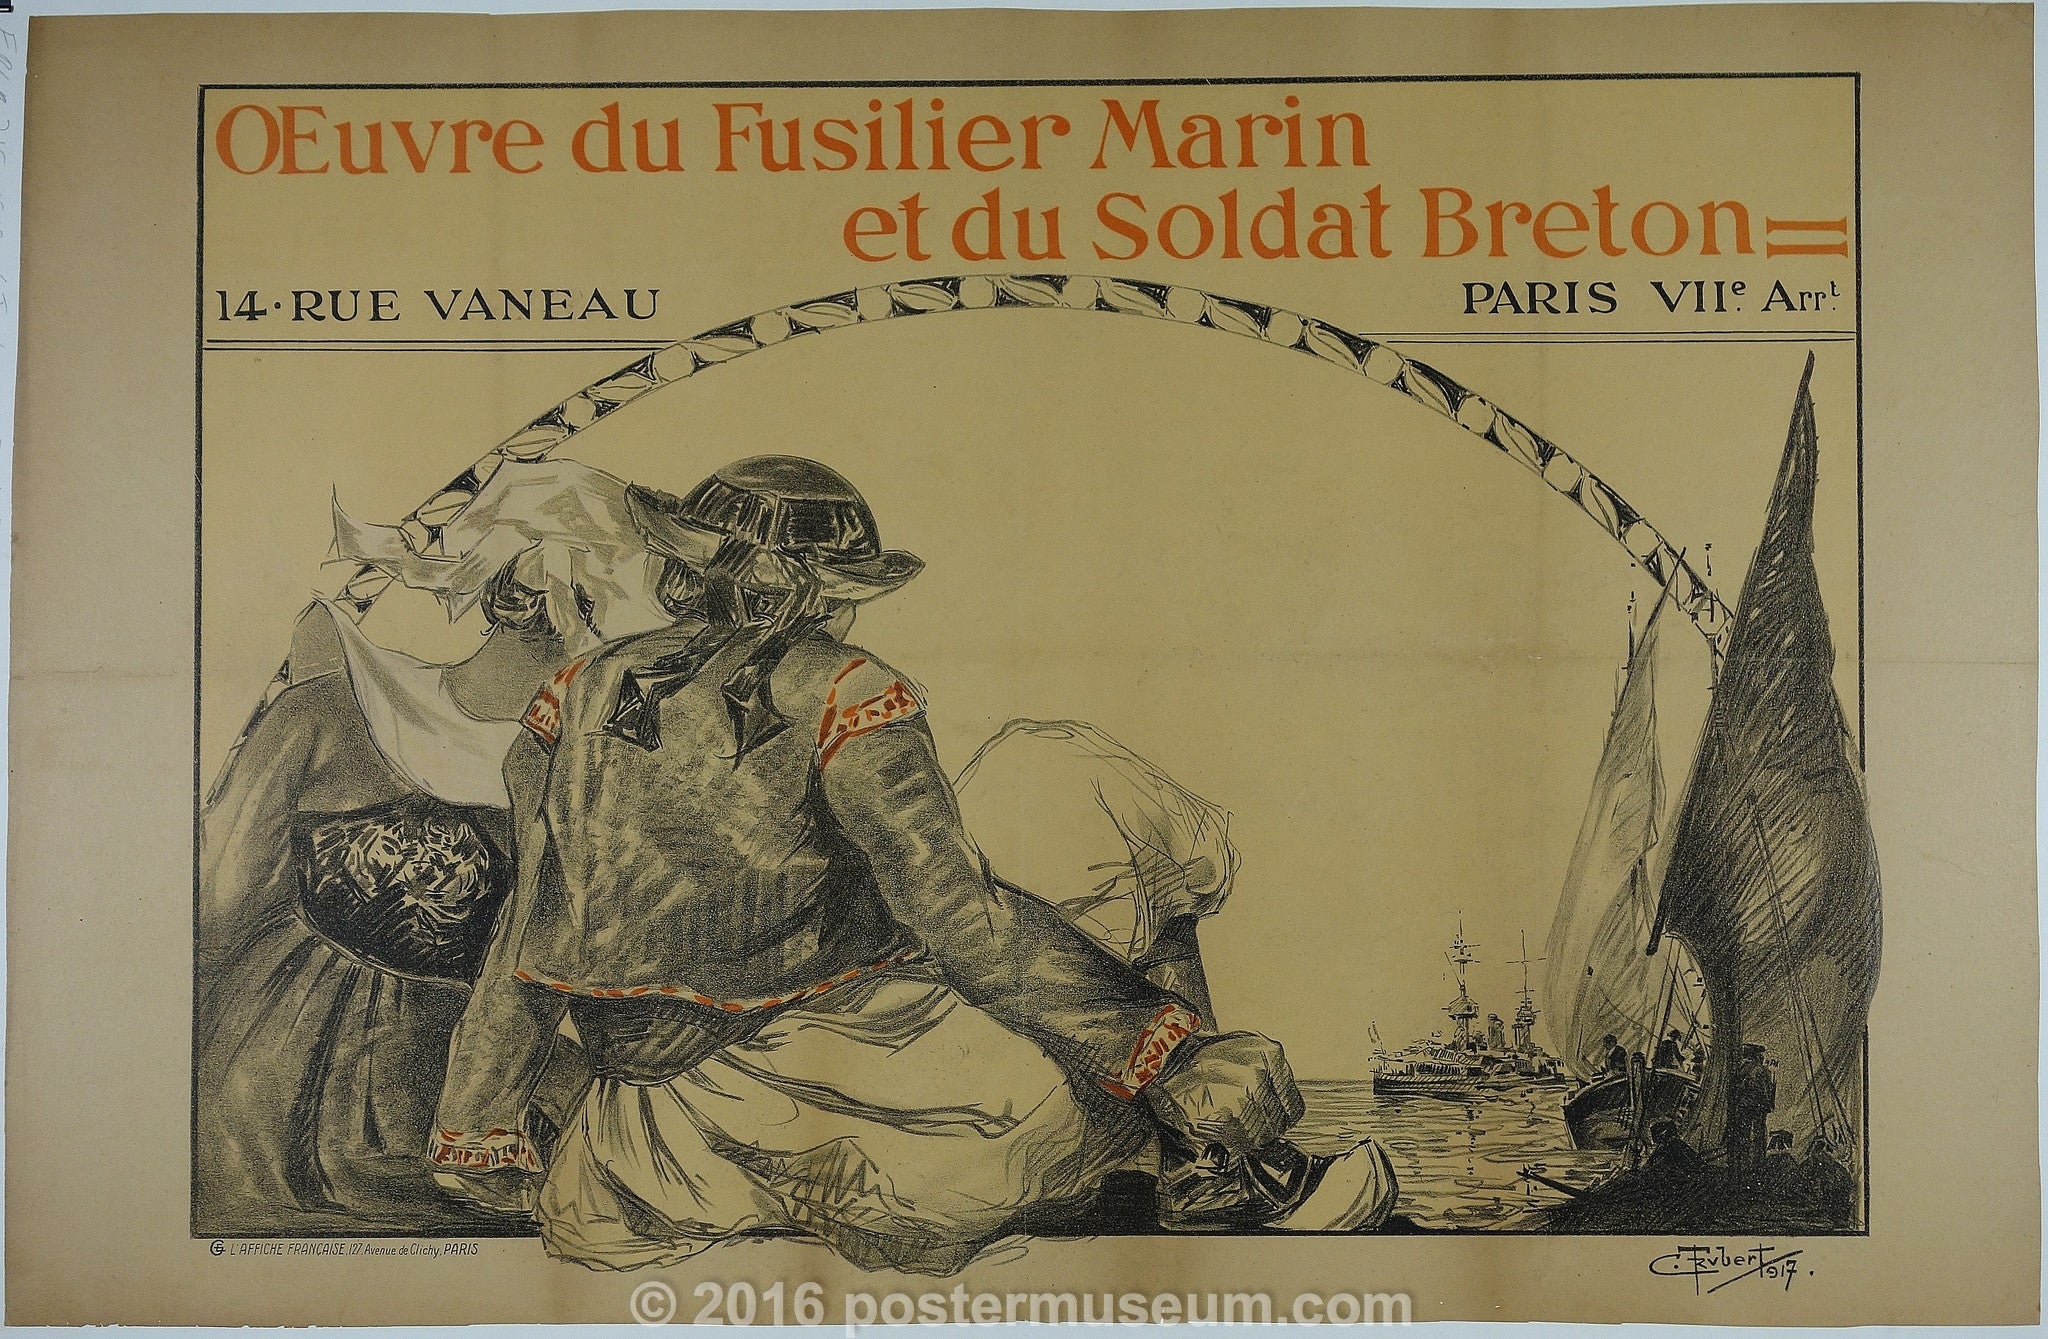 Oeuvre de Fusilier Marin et du Soldat Breton